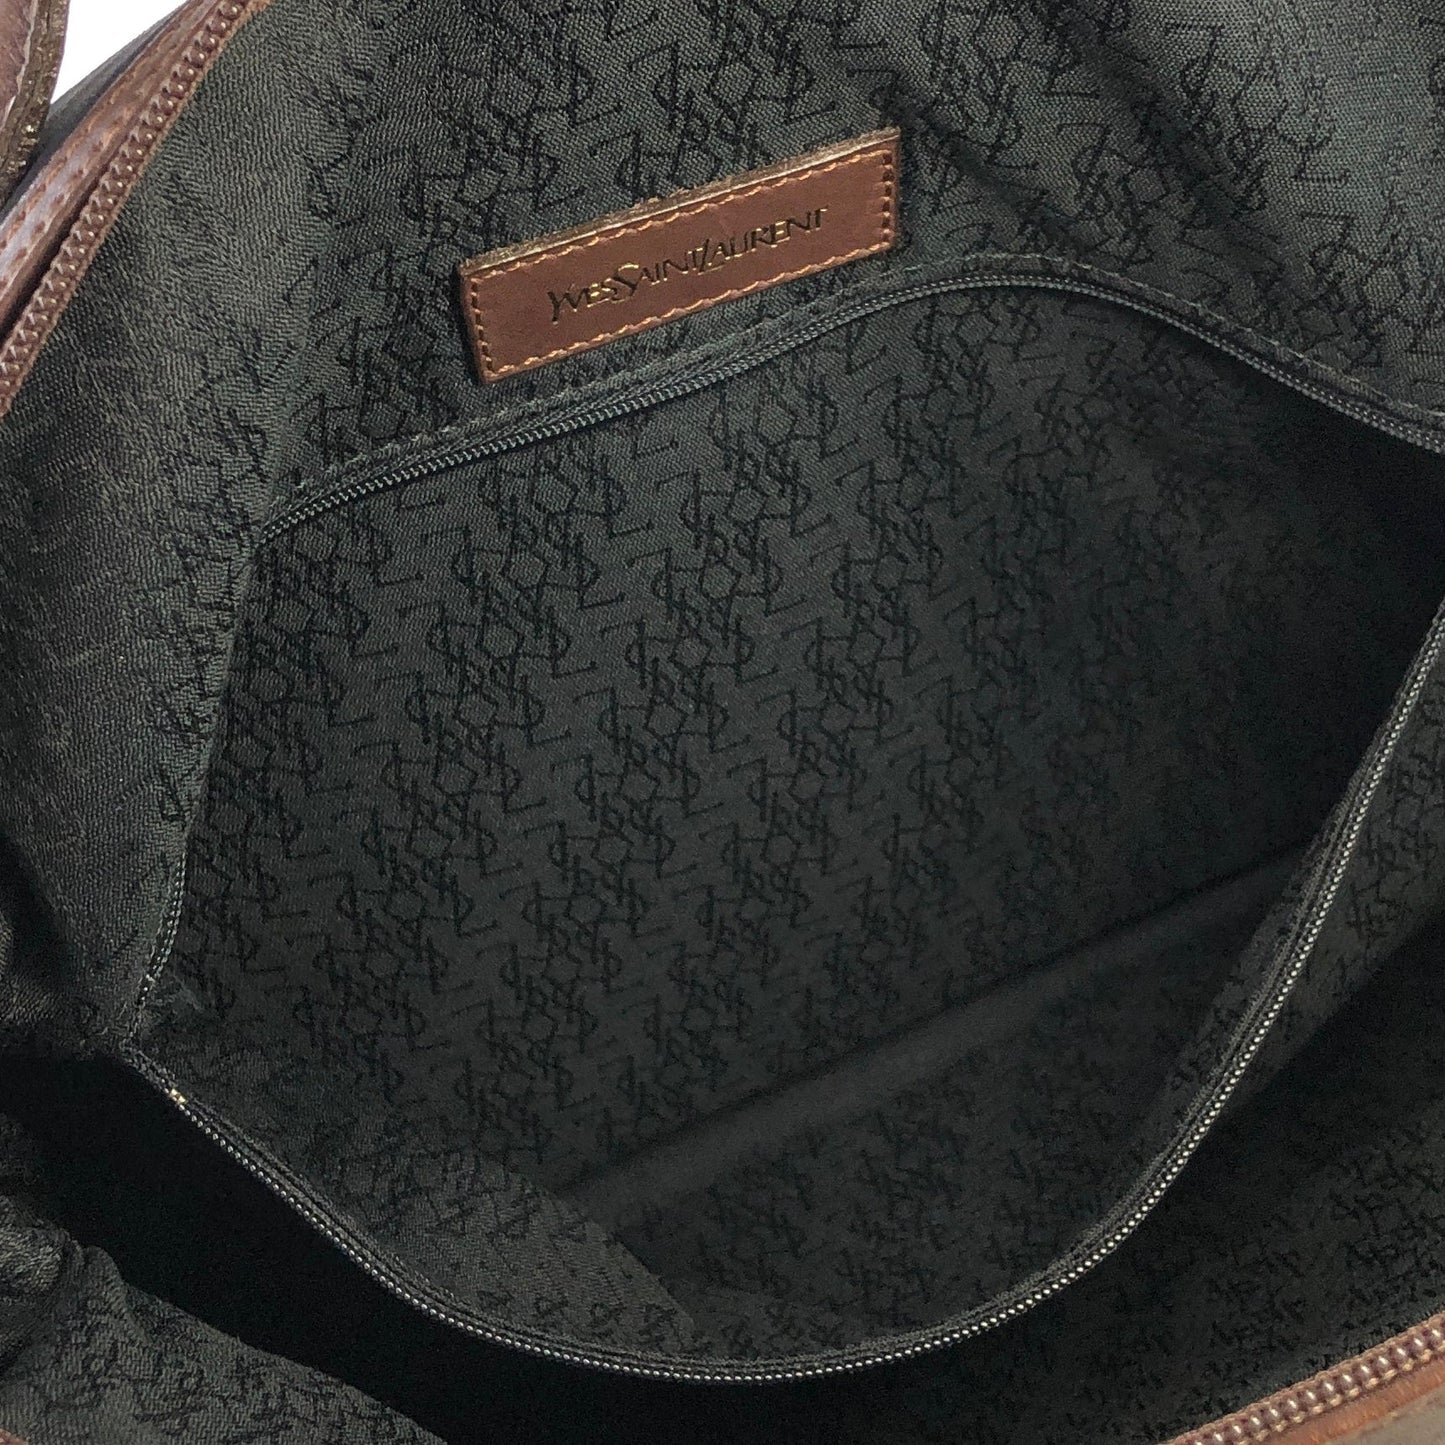 Yves Saint Laurent yEmbossed  Nylon x leather 2way bostonba shoulder bag navy x brown vintage old yf3gf4